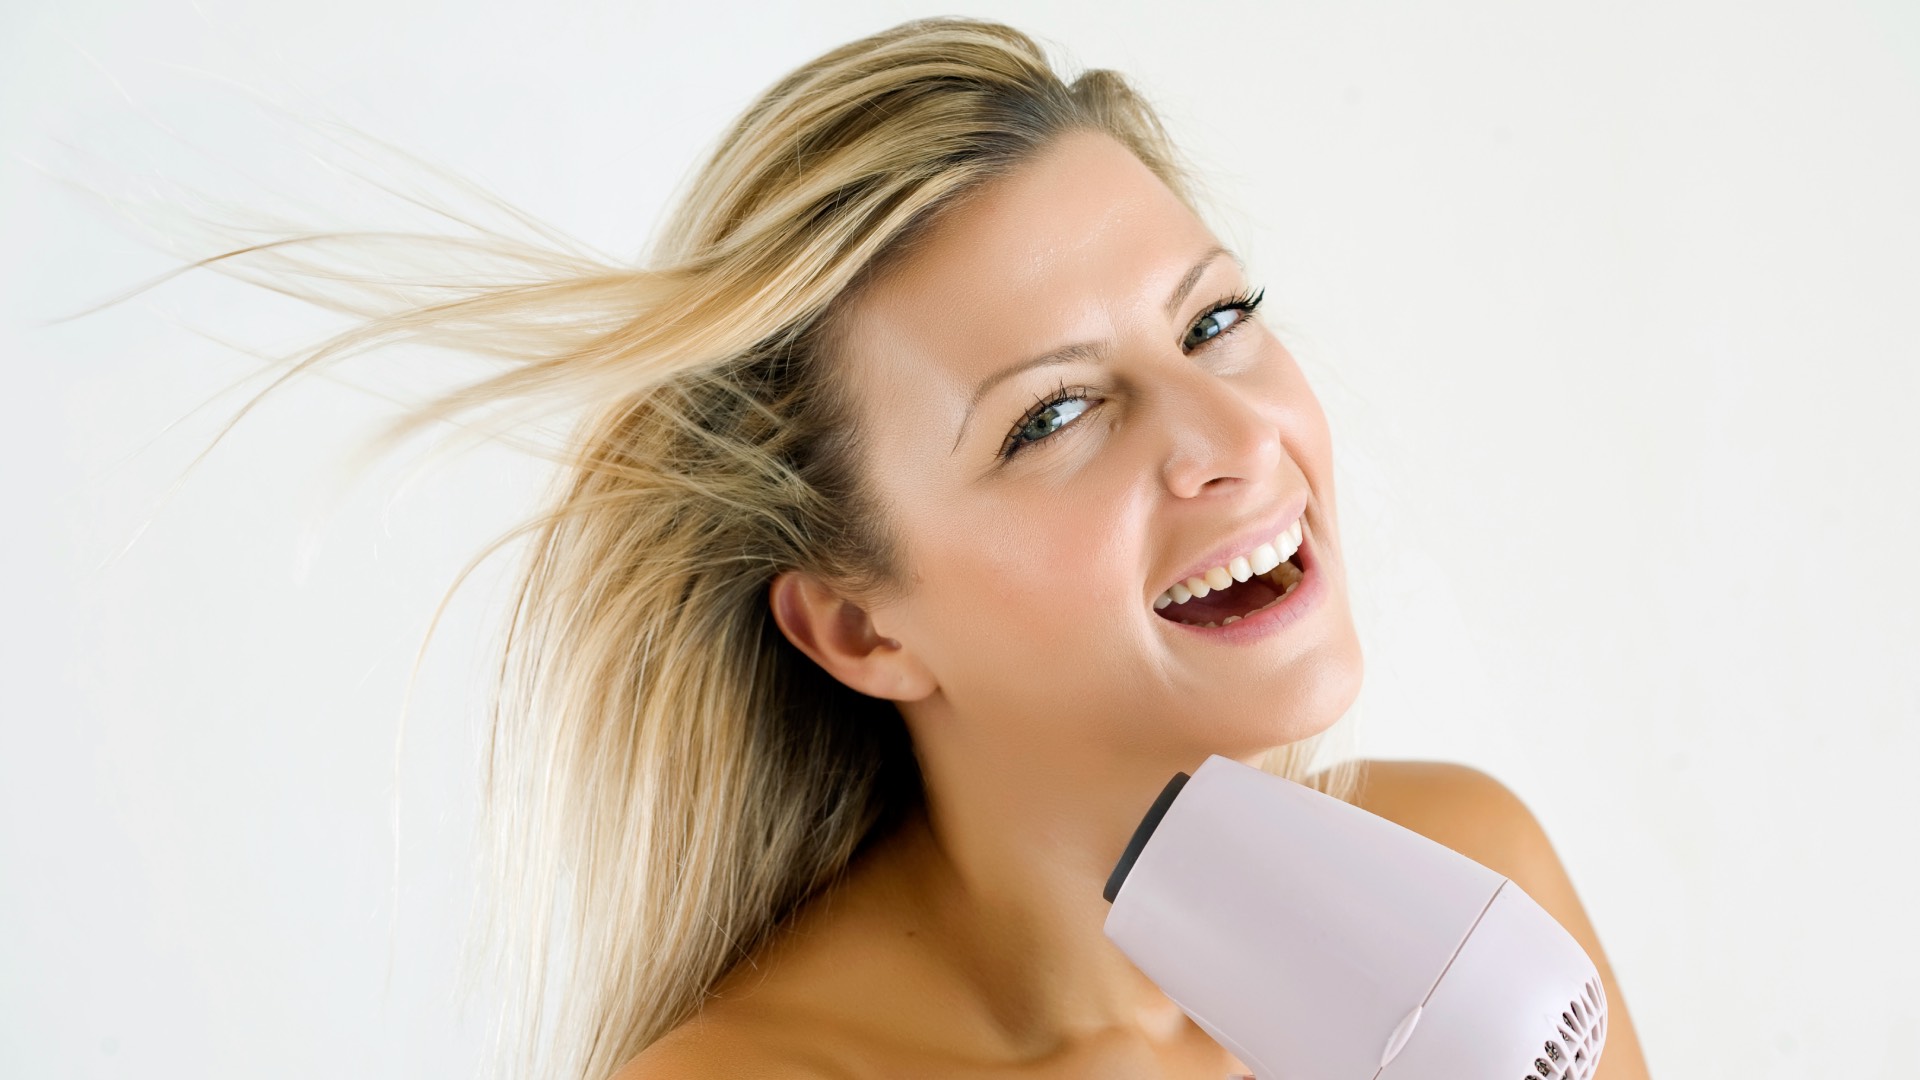 Imagen de ¡Adiós al secador! Estos trucos para secar tu pelo al aire te salvarán la vida (y la melena)